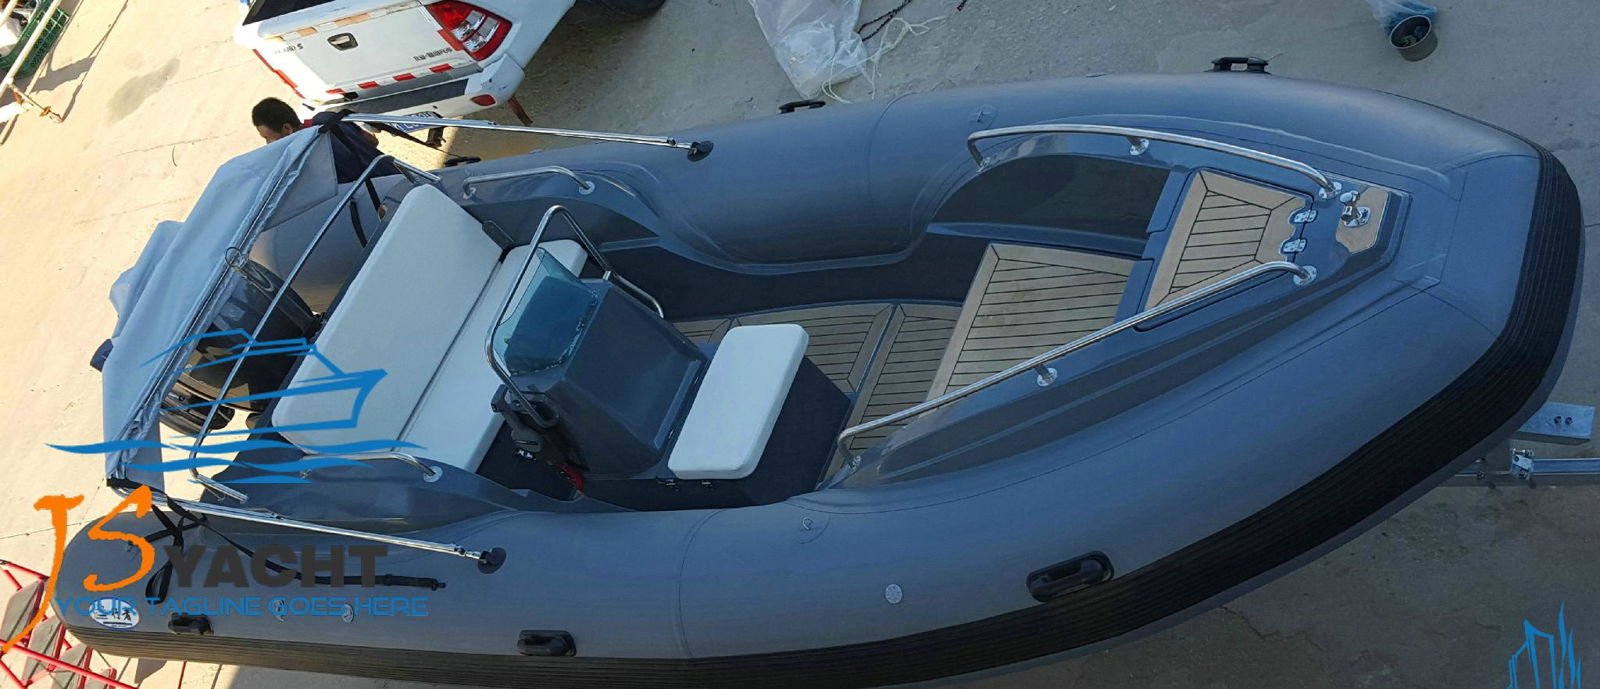 Rigid hull inflatable boat(RHIB,RIB) 3